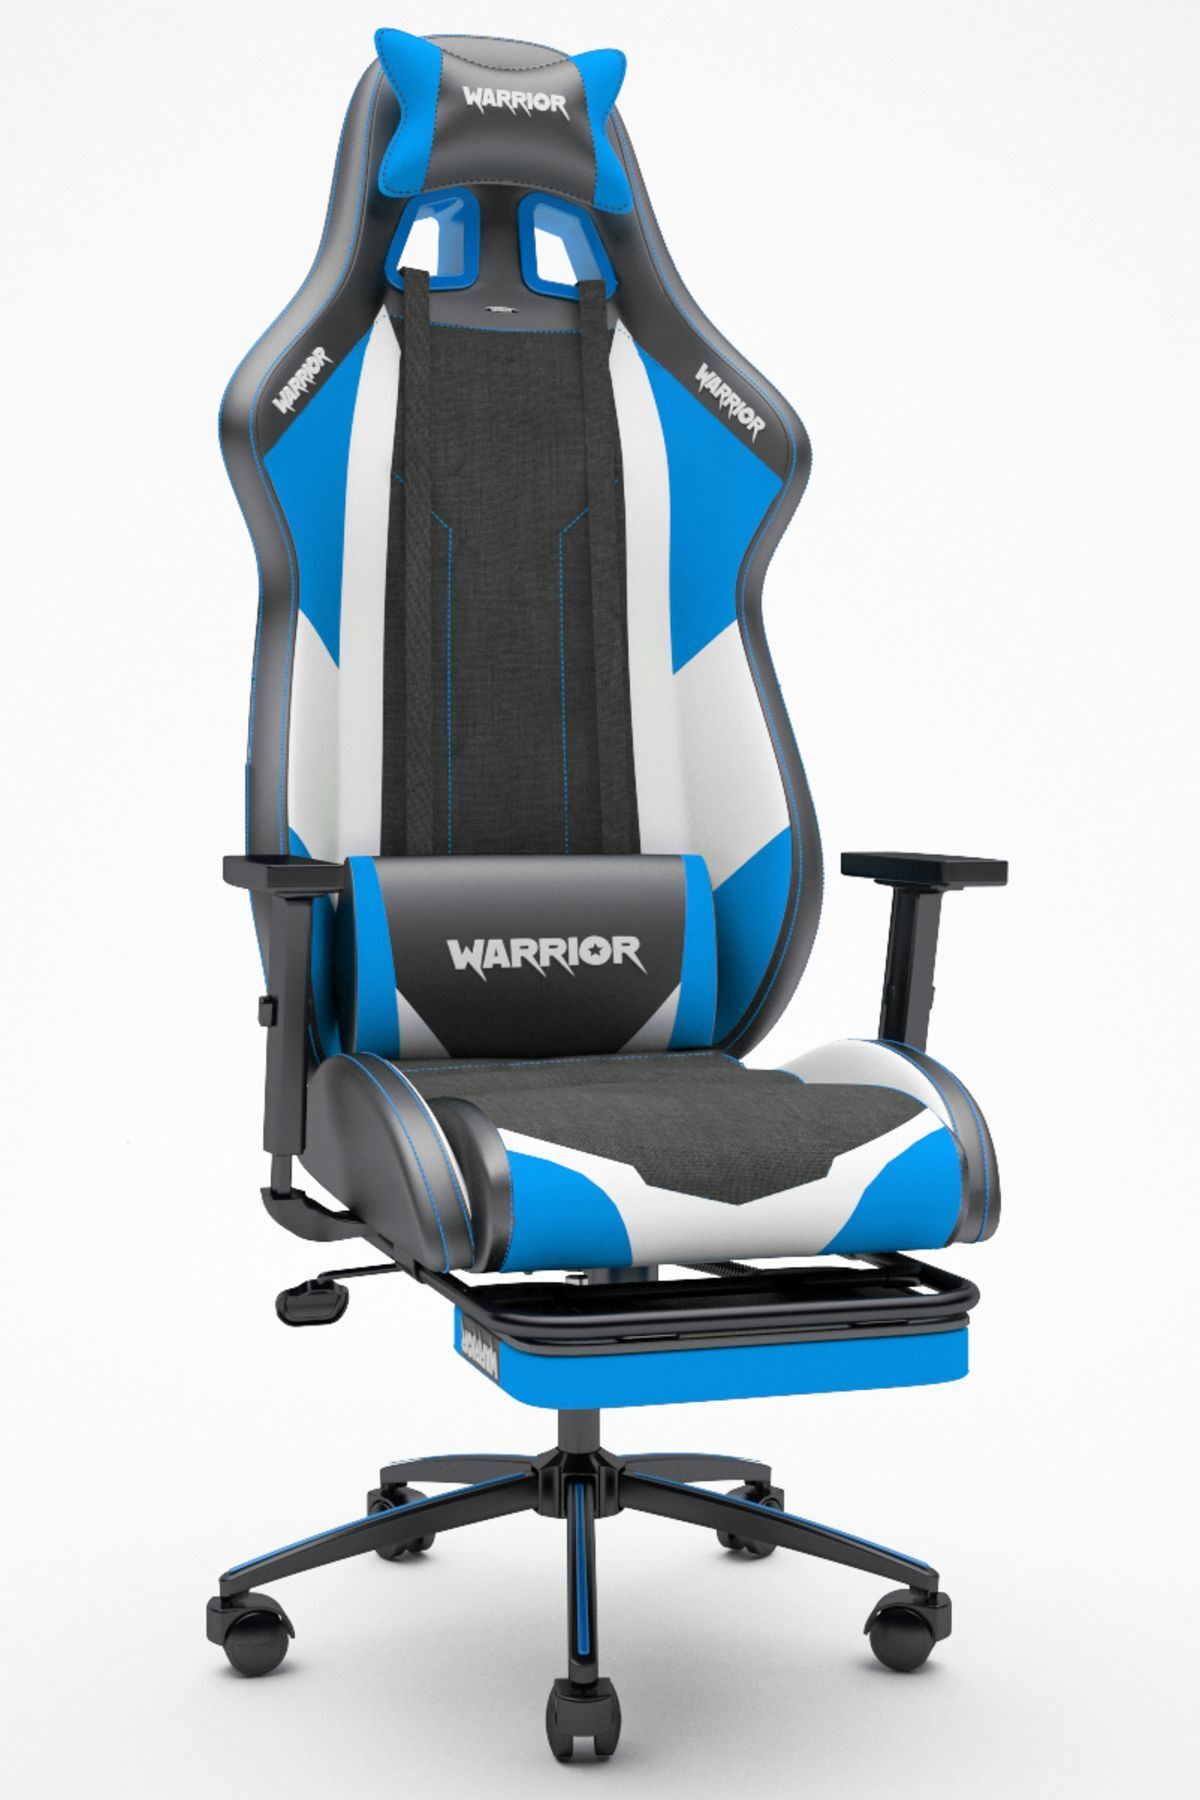 warrior Scorpion Oyuncu Koltuğu - Mavi - Ayak Uzatmalı Bilgisayar Sandalyesi - 1575c0514